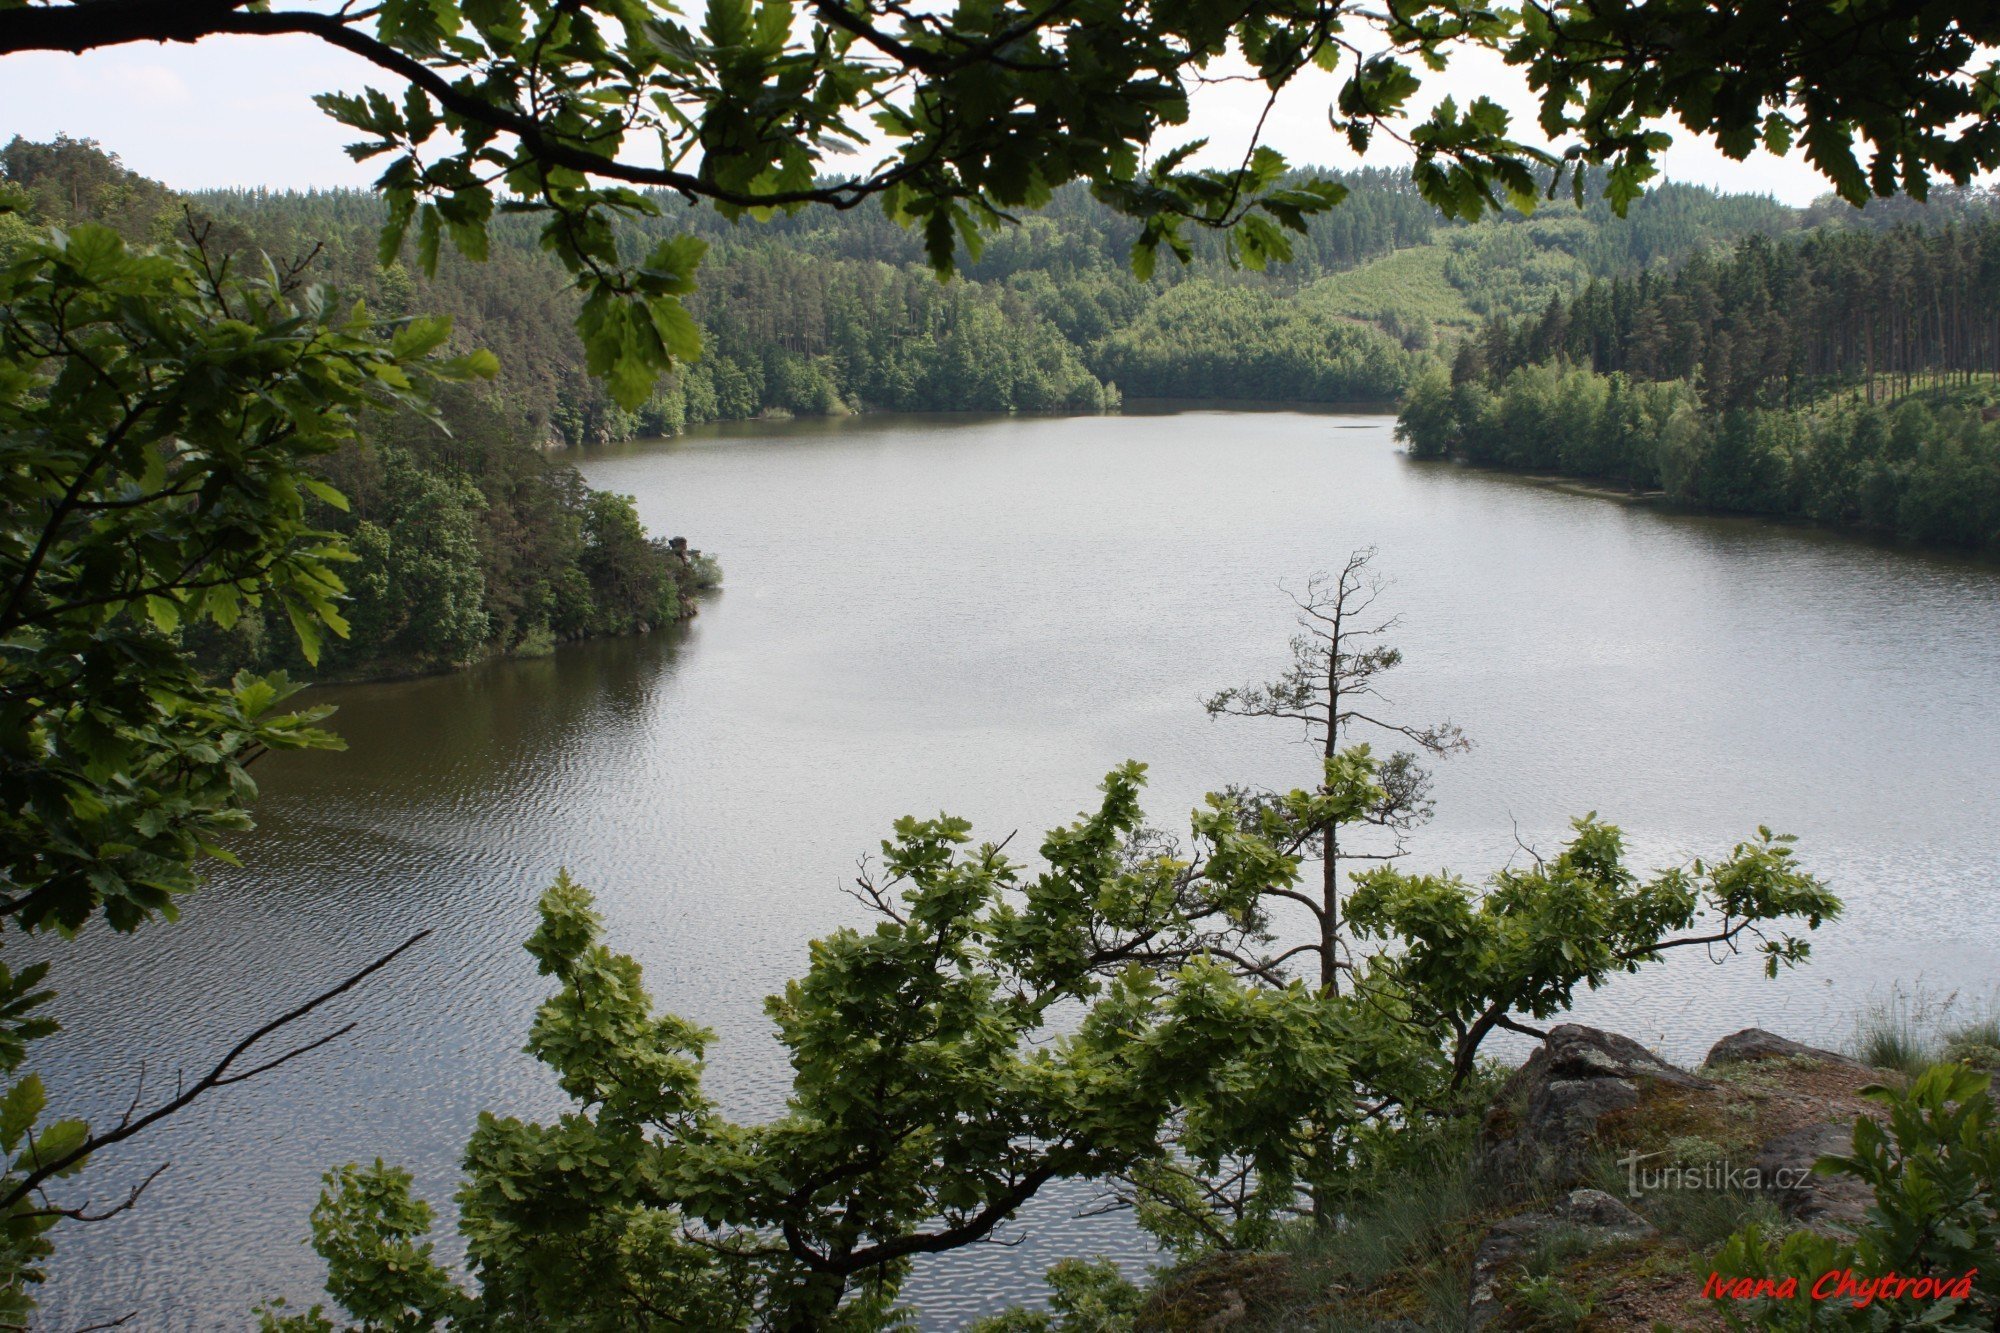 Dalešice Reservoir